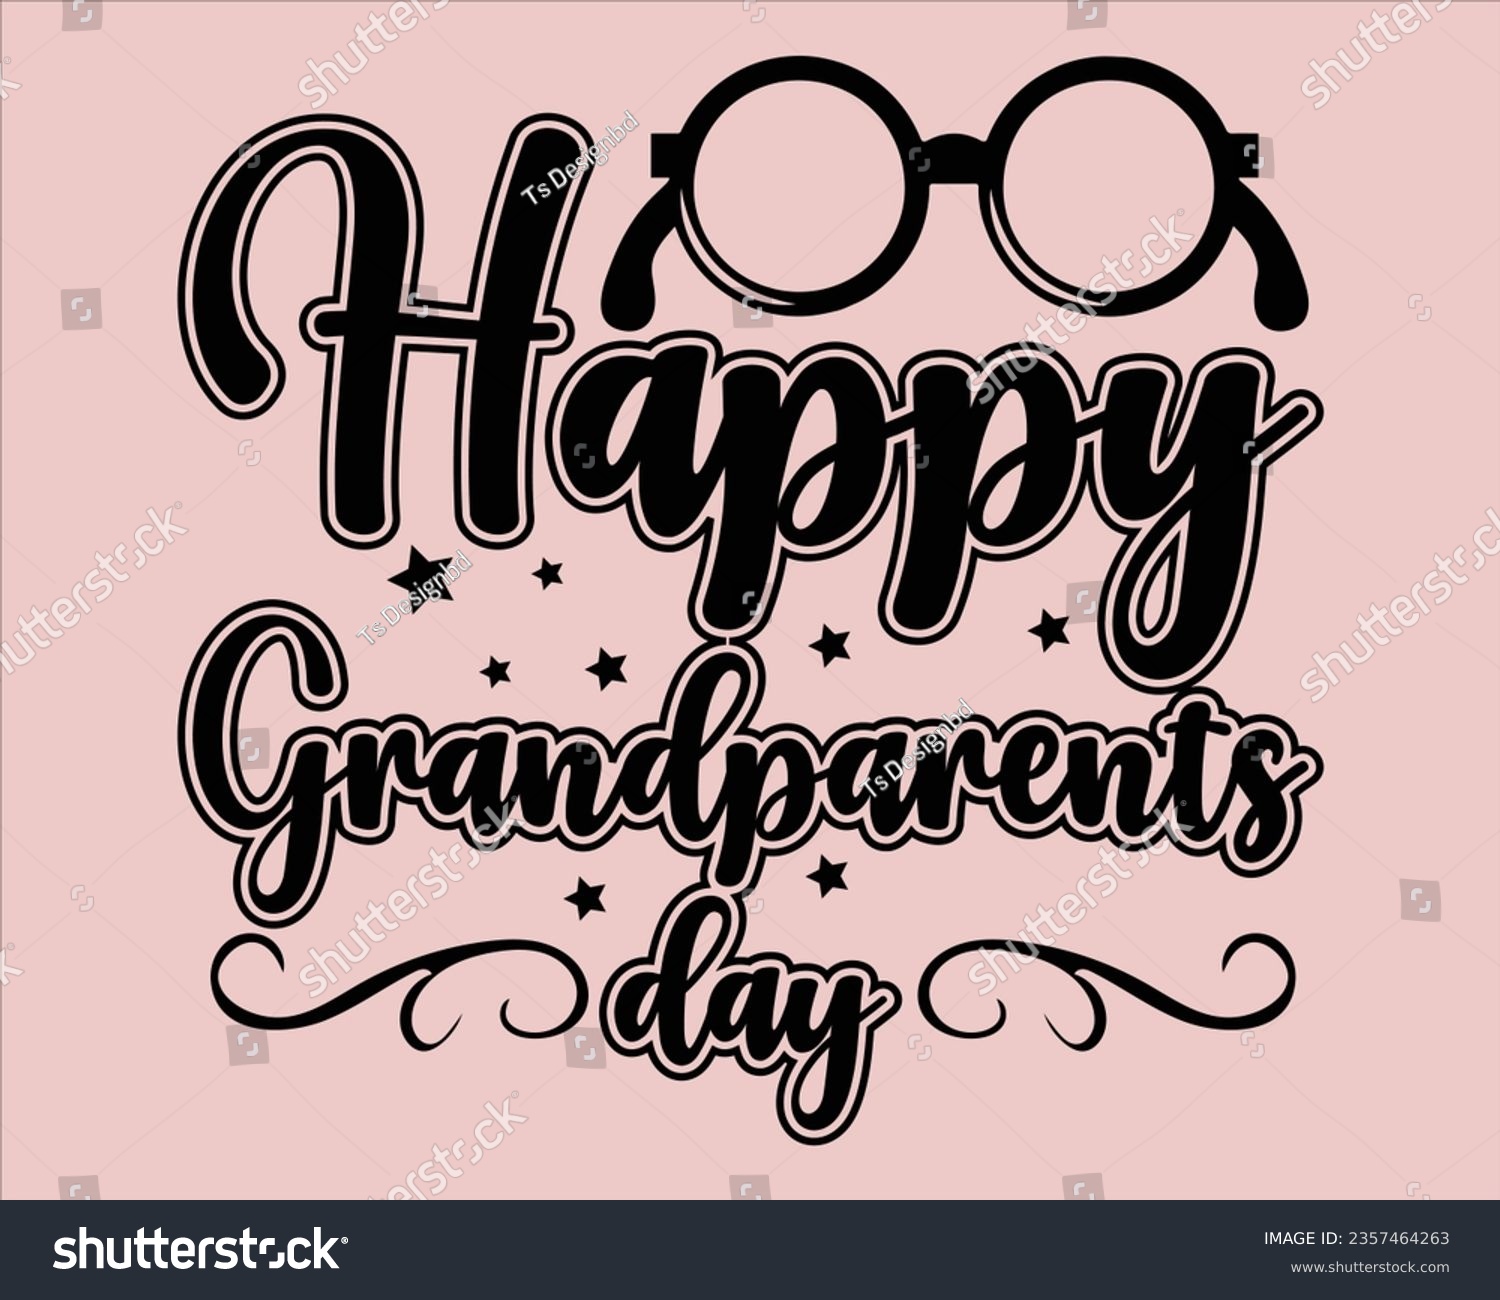 SVG of Grandparents Day Svg Design,grandparents T Shirt Design,Grandpa svg, Grandparents svg,Grandma svg,grandparents day Design, Best Grandma svg svg